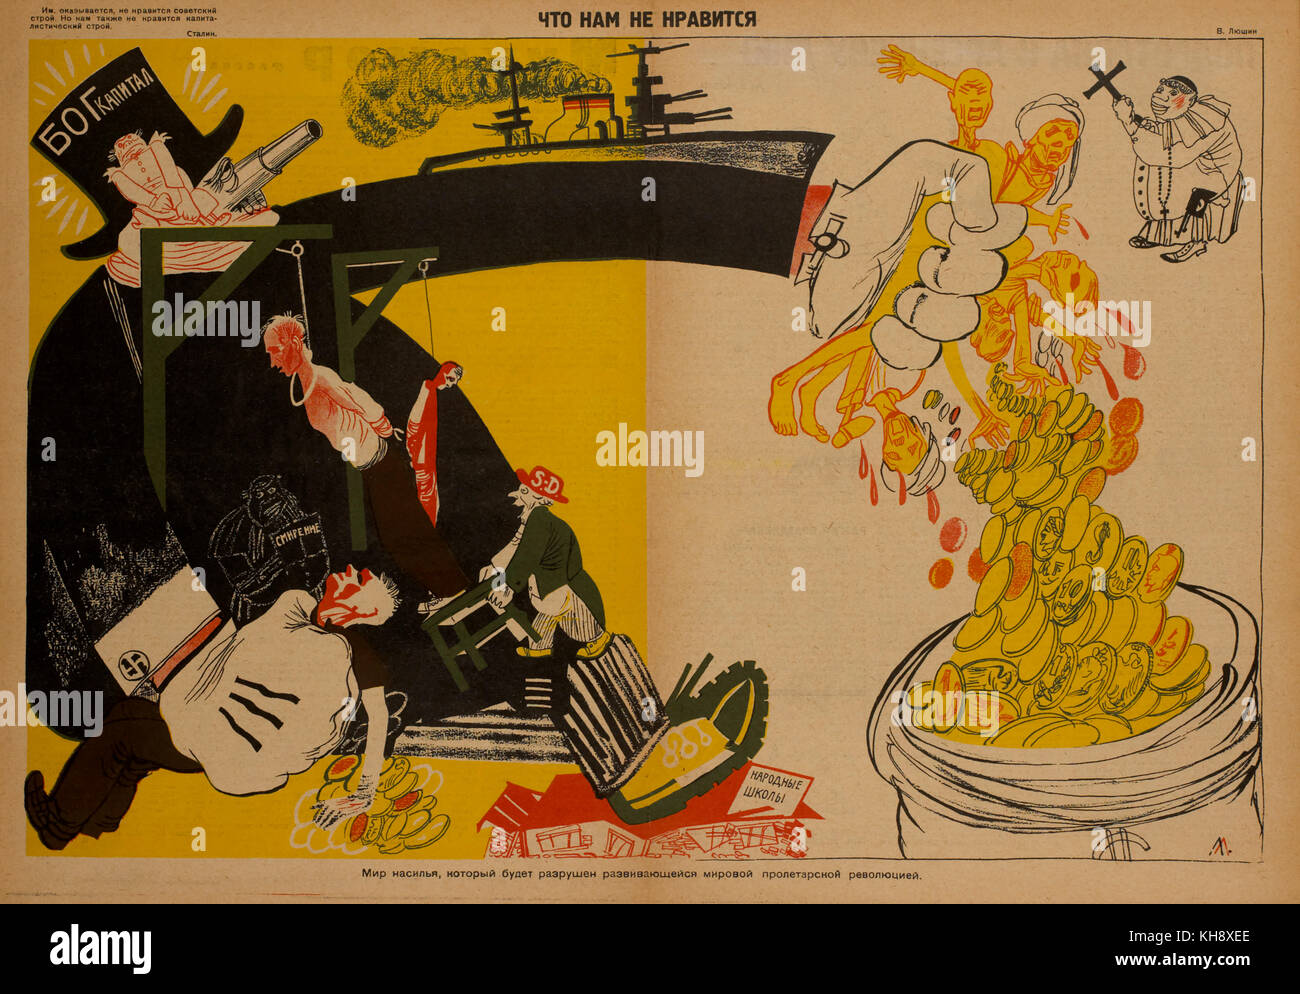 Affiche de propagande russe, 'ce que nous n'aimons pas', bezbozhnik u stanka magazine, illustration par c. lyushin, Russie, 1920 Banque D'Images